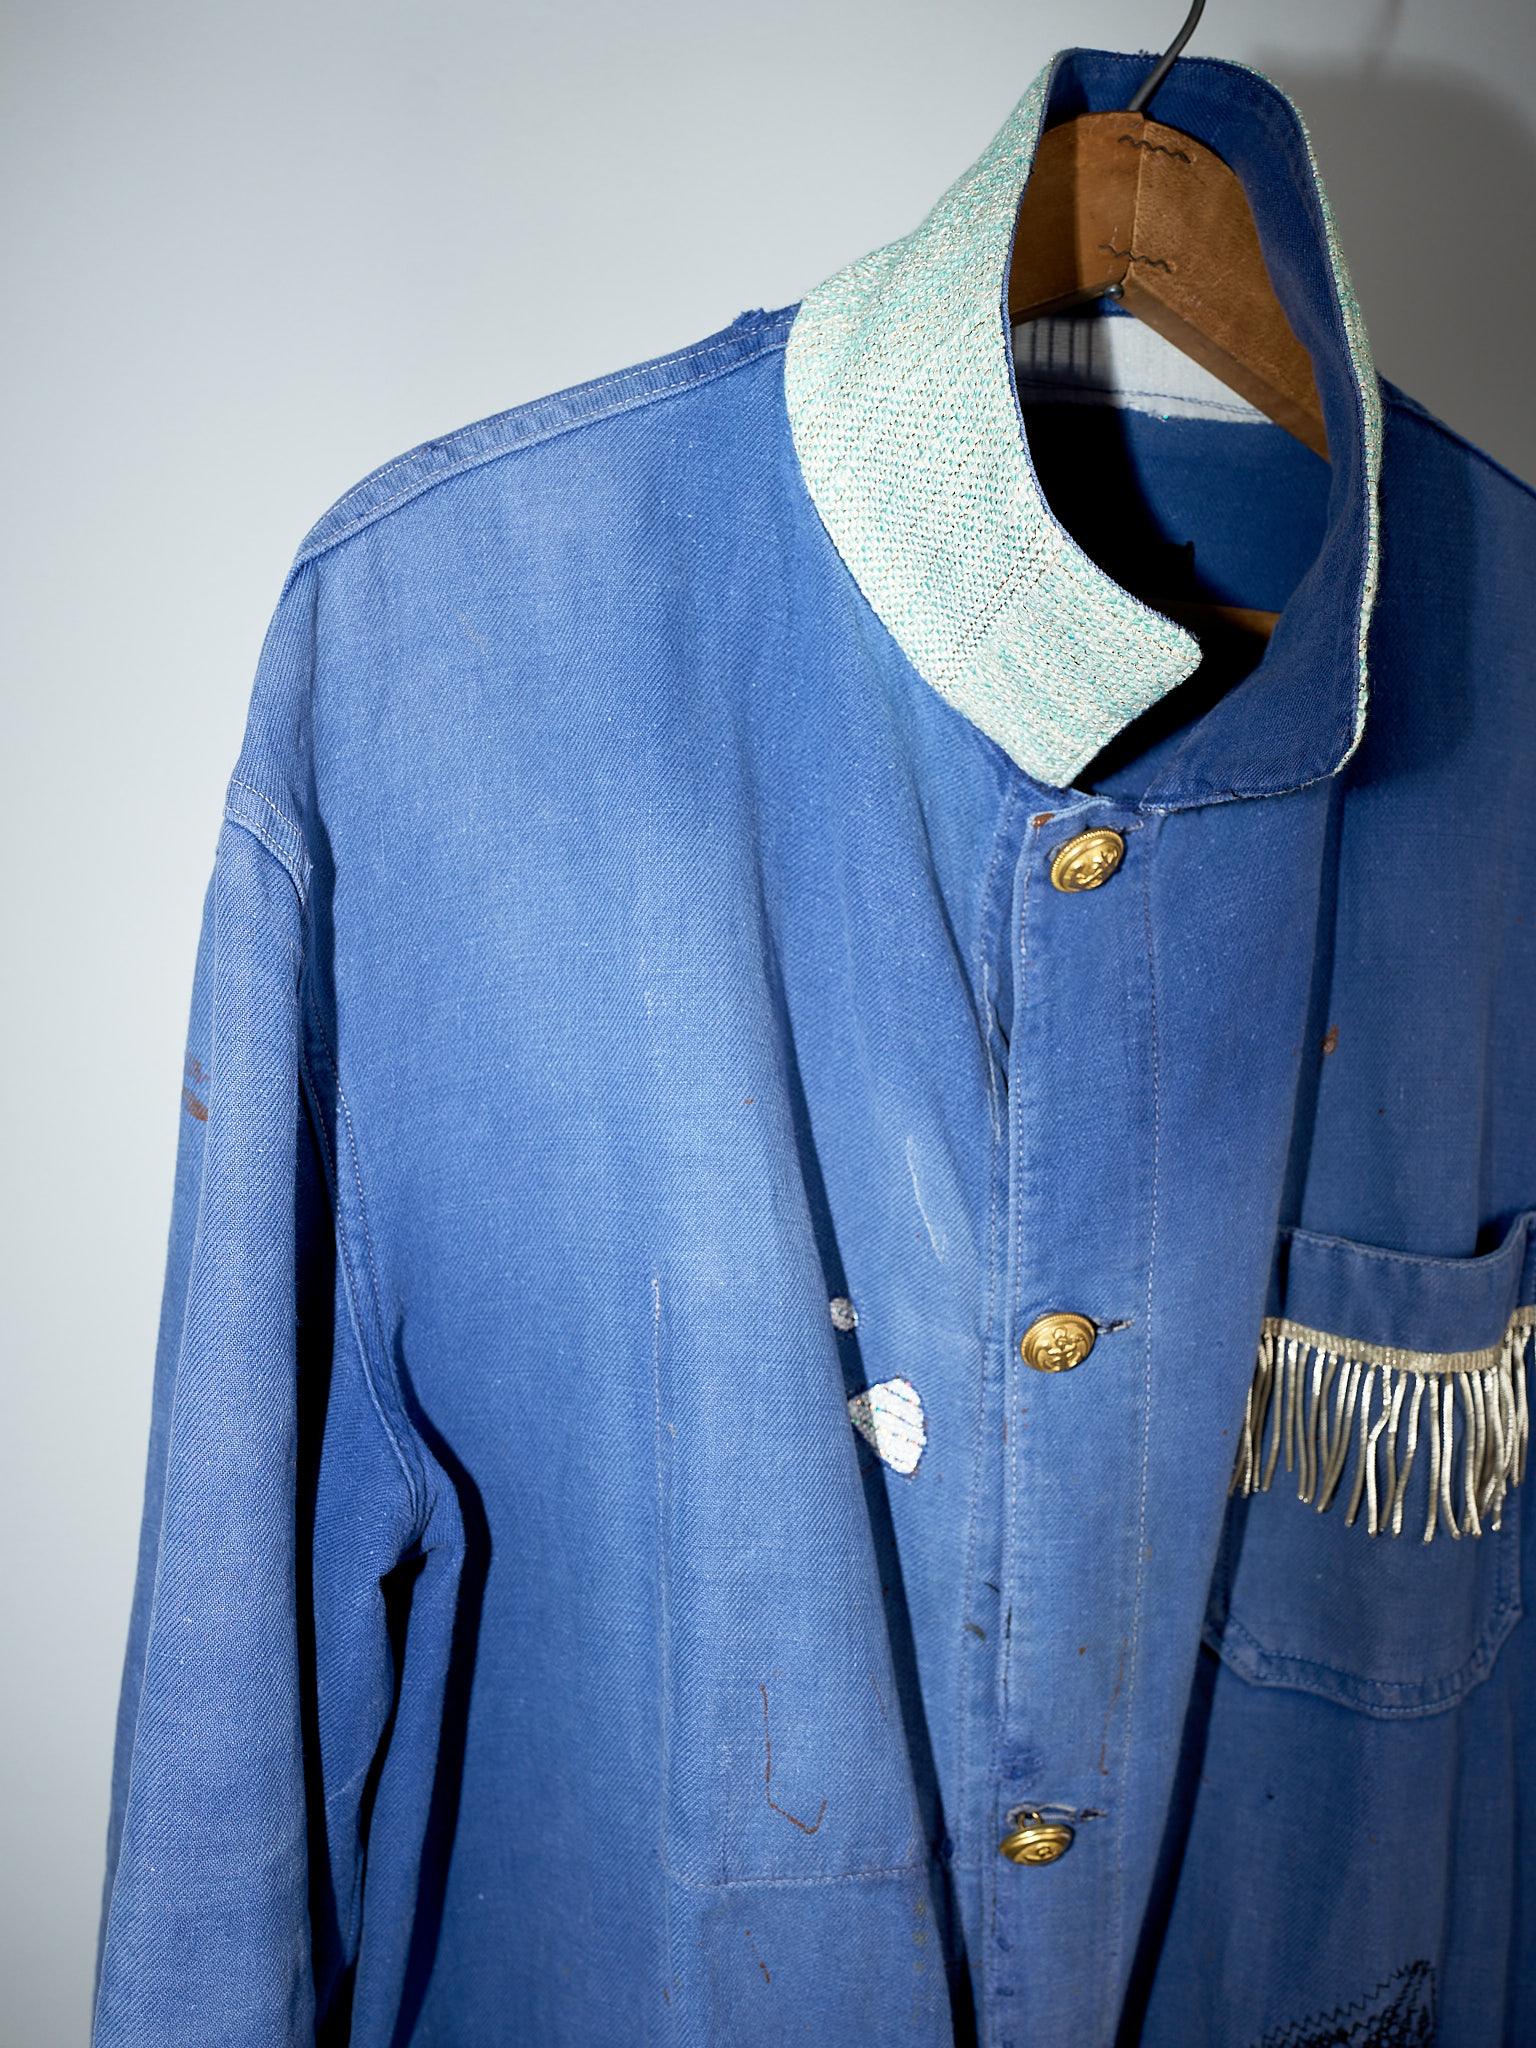 Women's Vintage  Repurposed French Work Wear Distressed Lurex Tweed